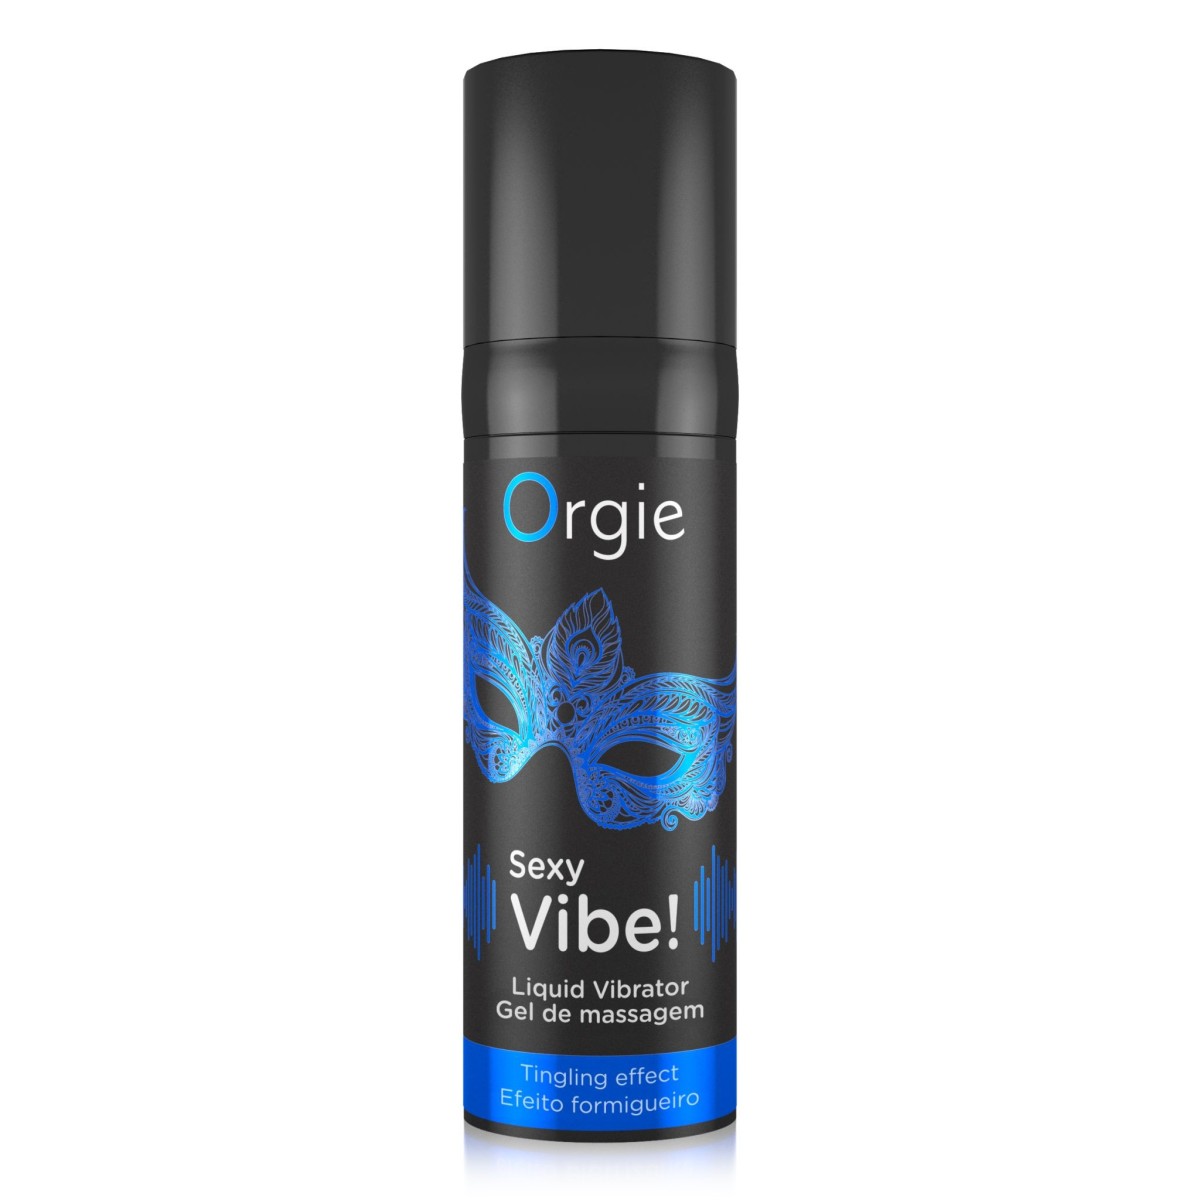 Orgie Sexy Vibe! Liquid Vibrator 15 ml, stimulačný gél s vibračným efektom